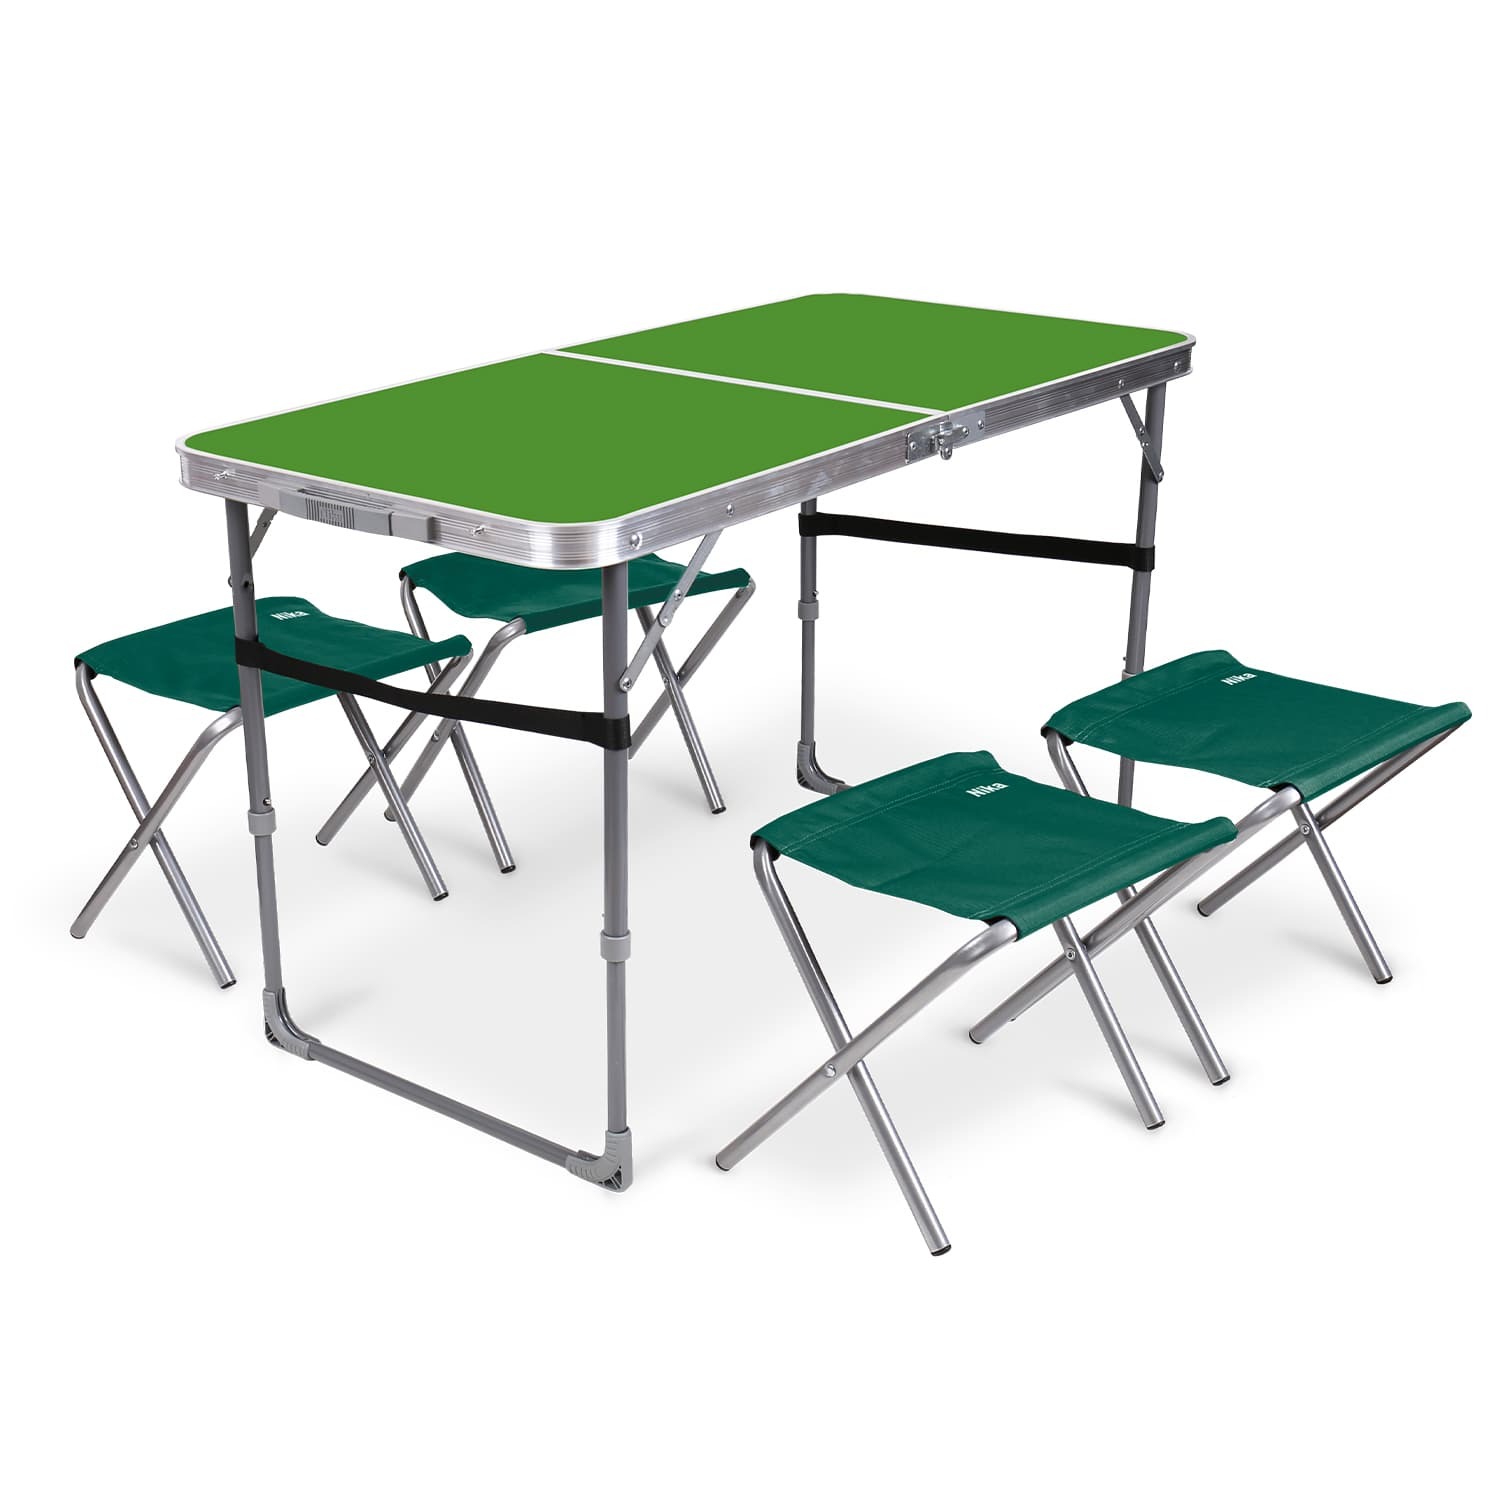 Комплект складной мебели Ника зеленый стол с изумрудными табуретами 5 предметов овальный складной стол комплект агро